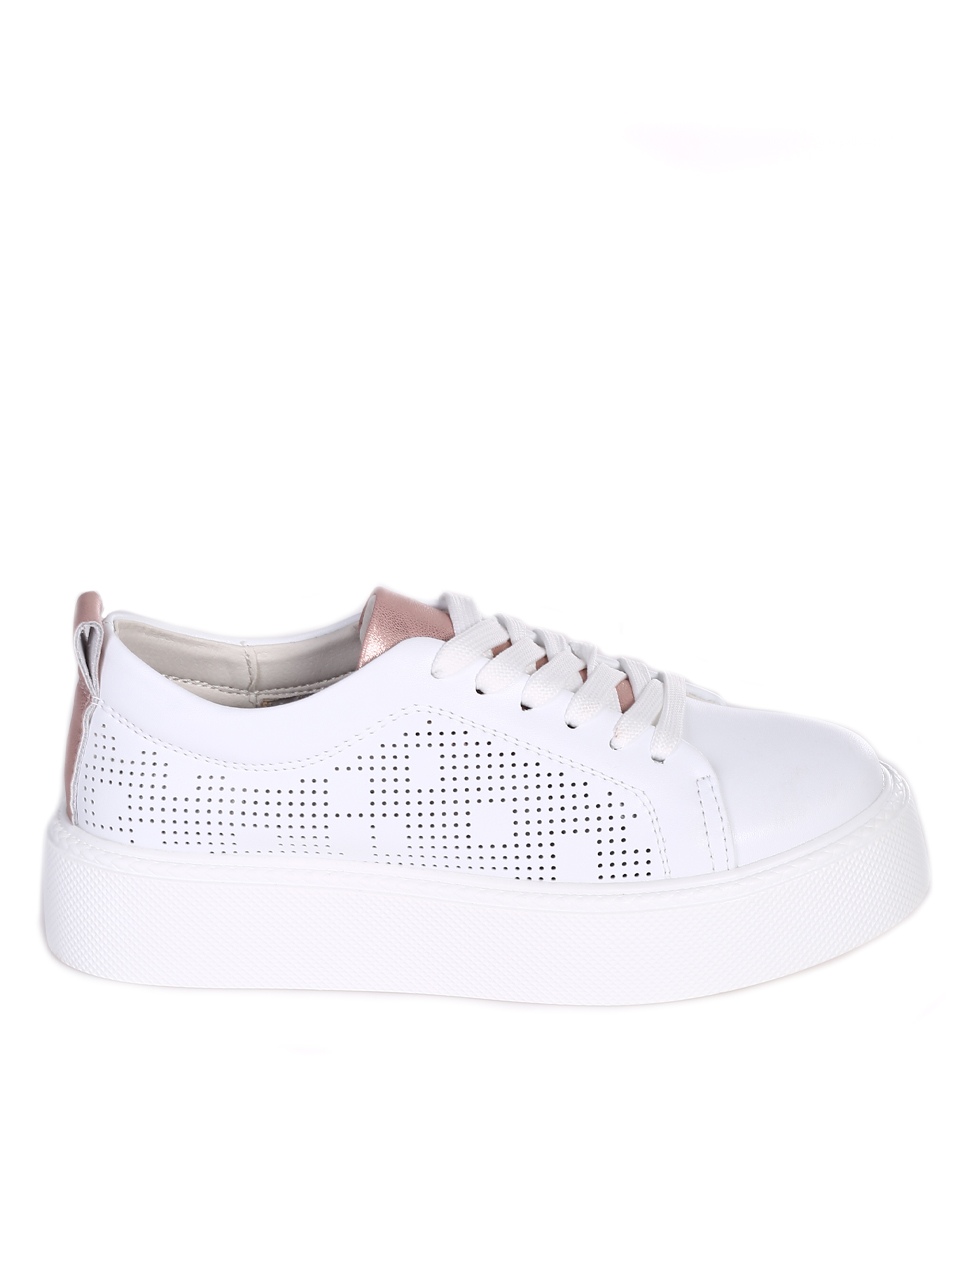 Eжедневни дамски обувки от естествена кожа в бяло 3AF-24102 white (23175)